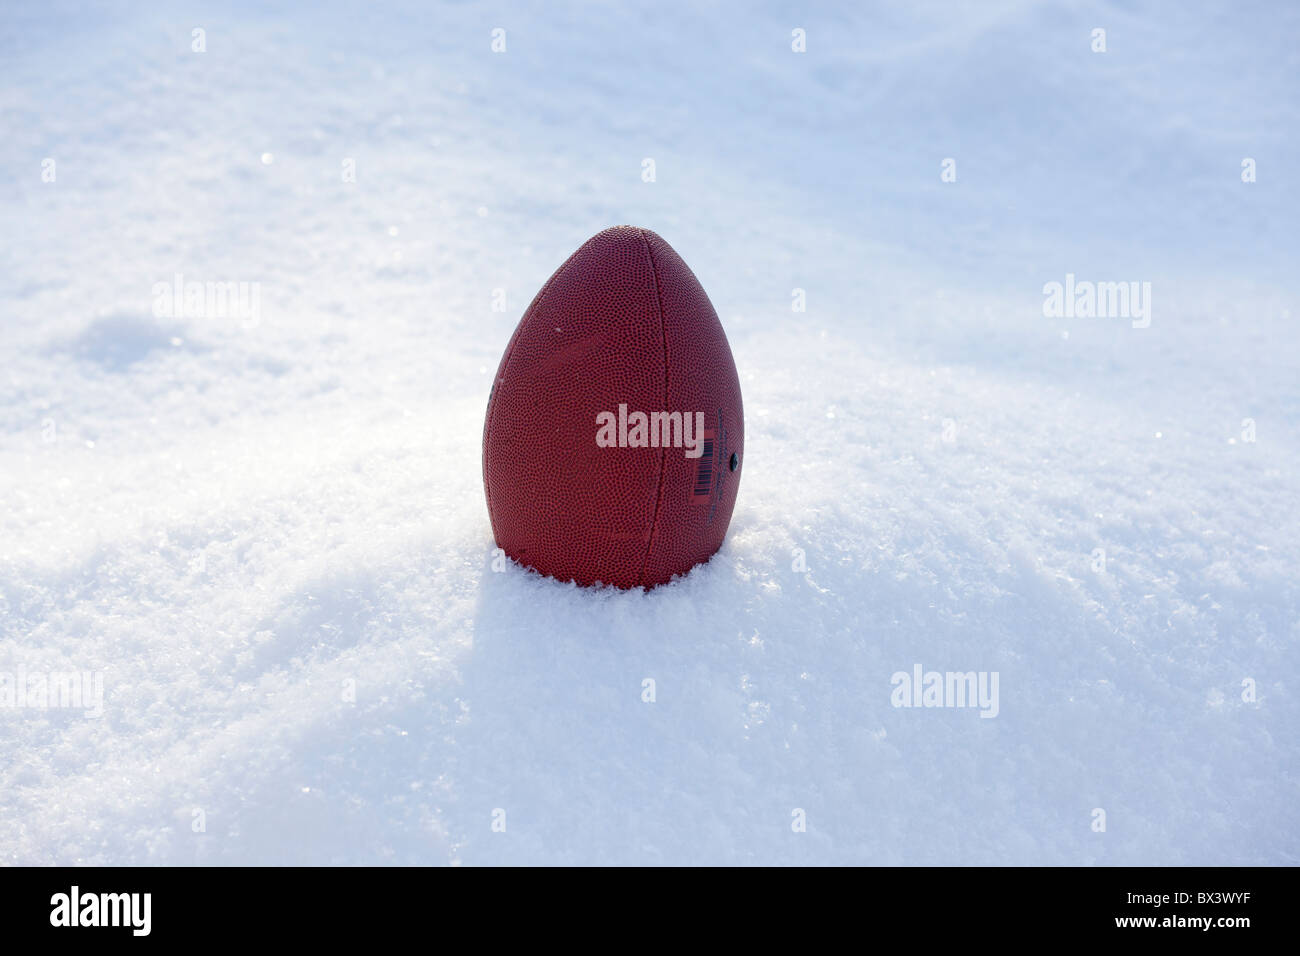 Fußball im schnee -Fotos und -Bildmaterial in hoher Auflösung – Alamy